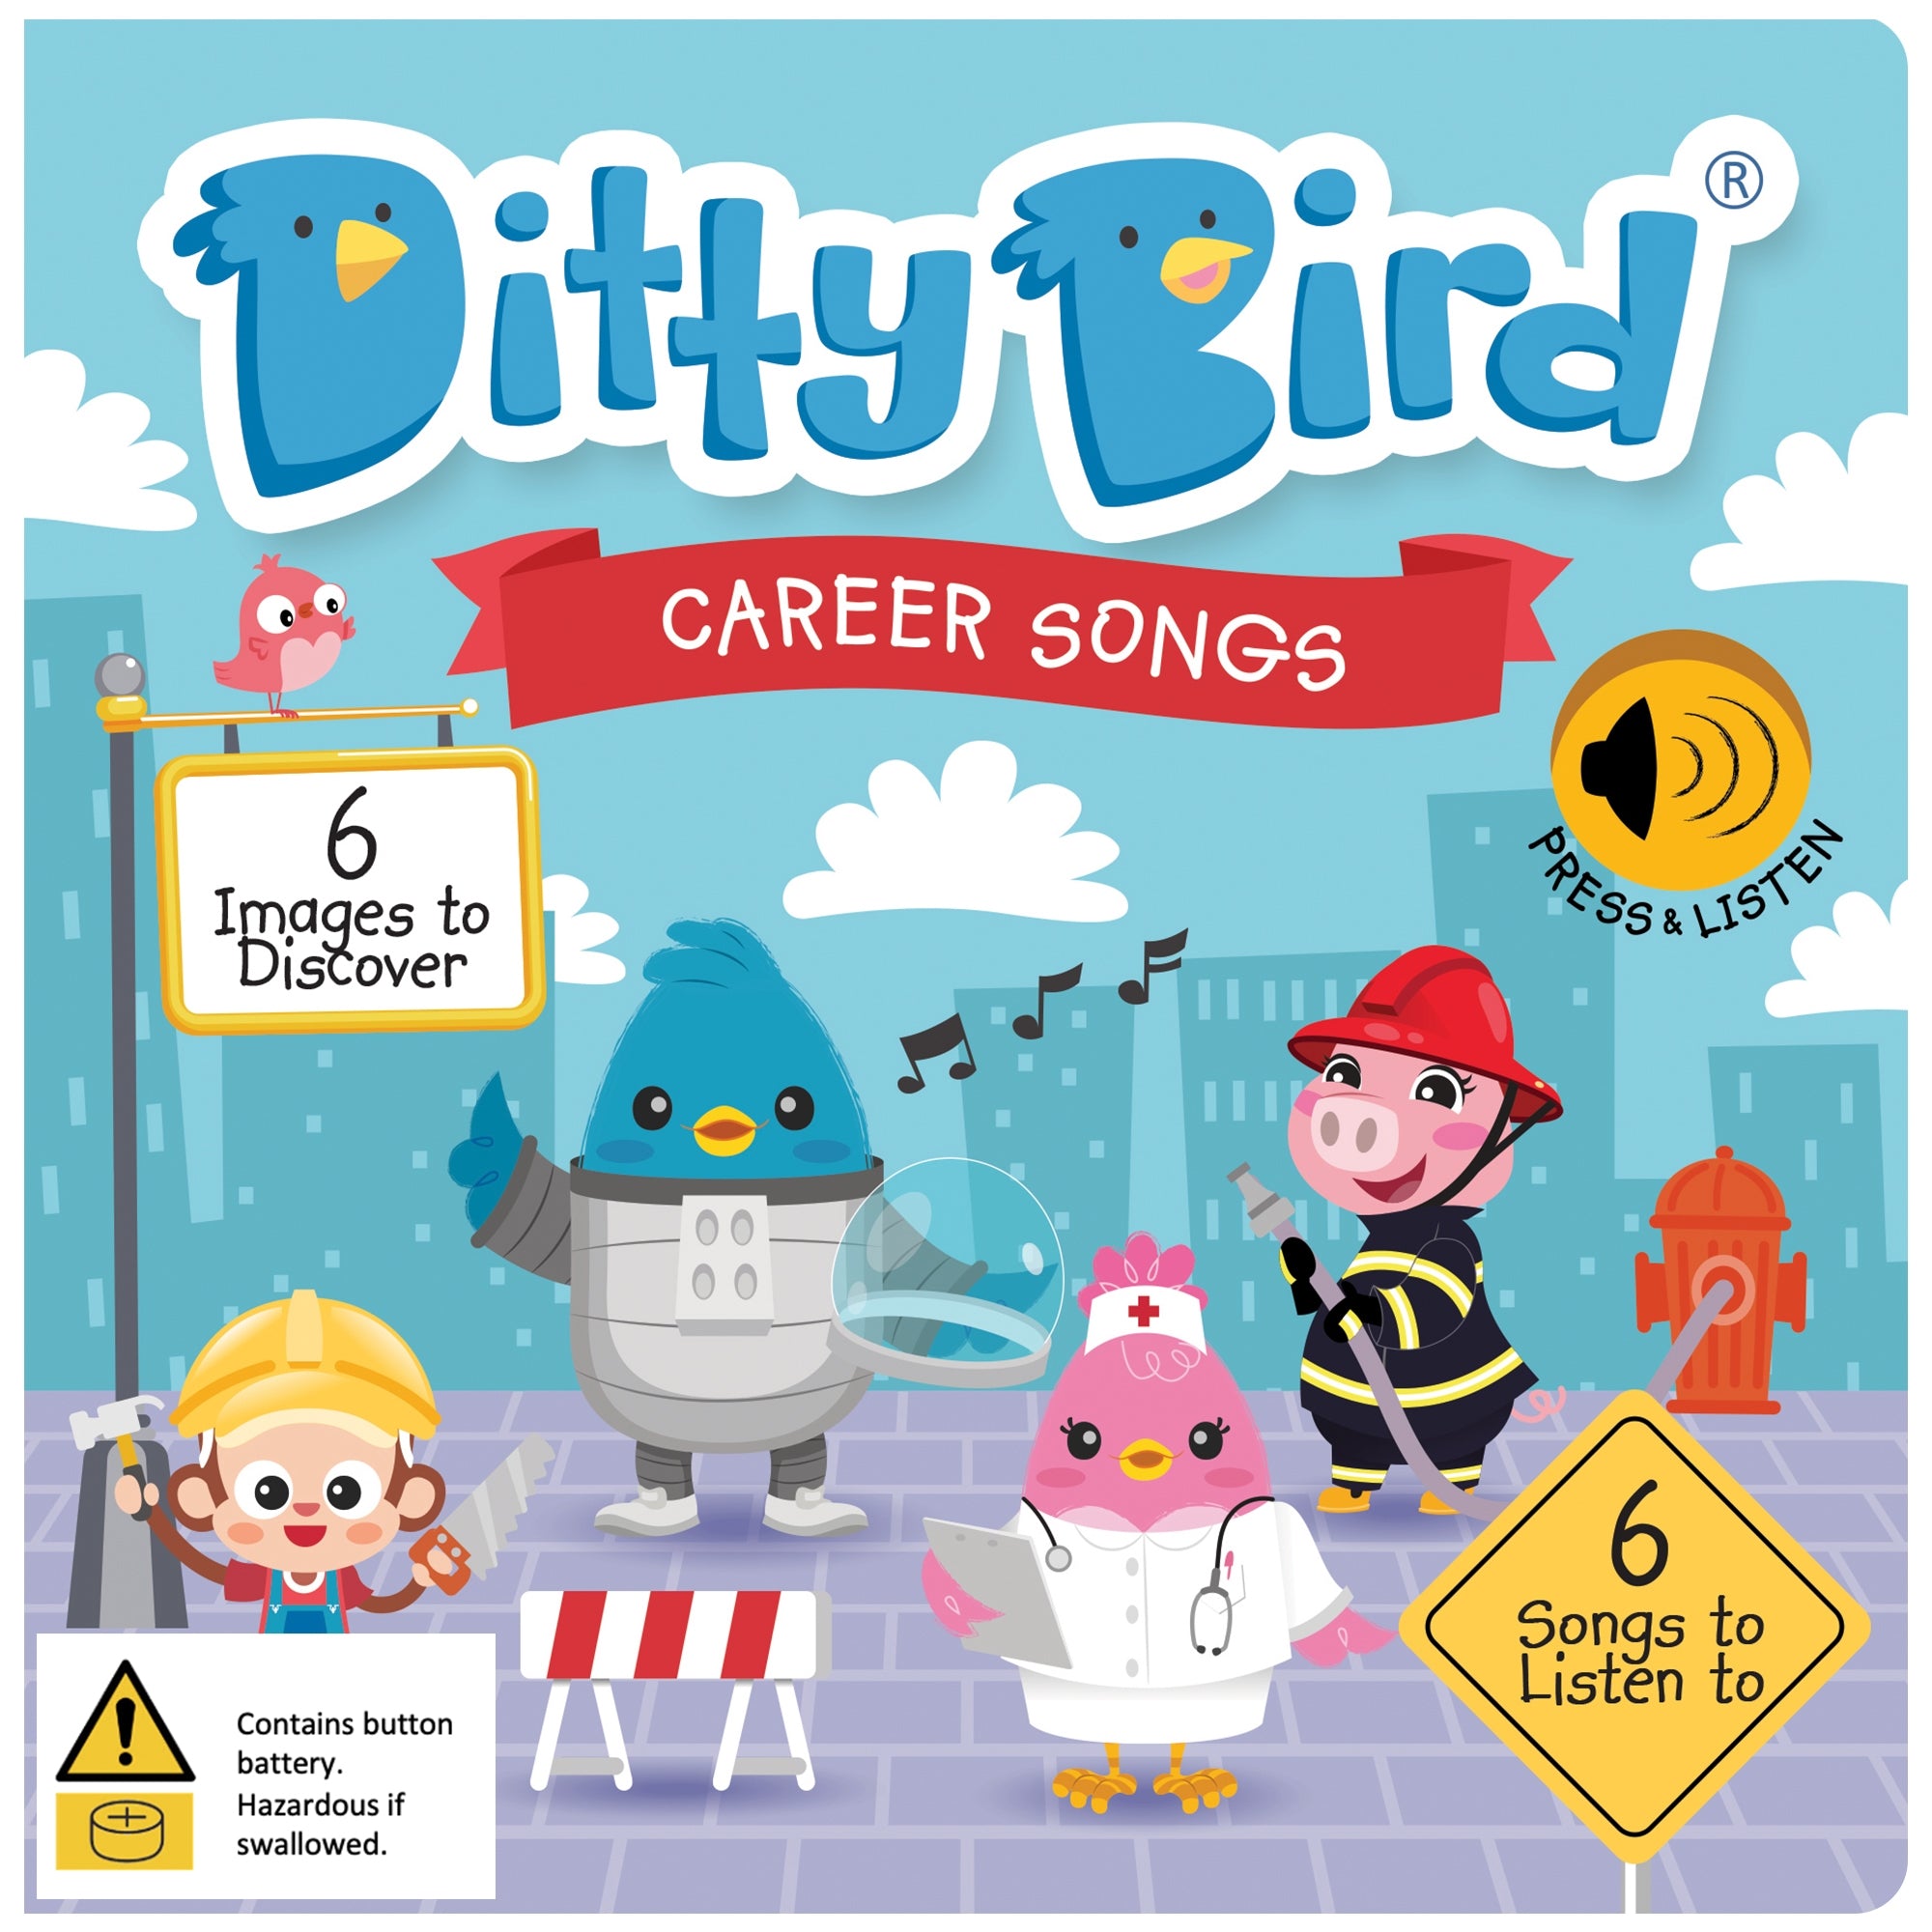 Career Songs - Ditty Bird